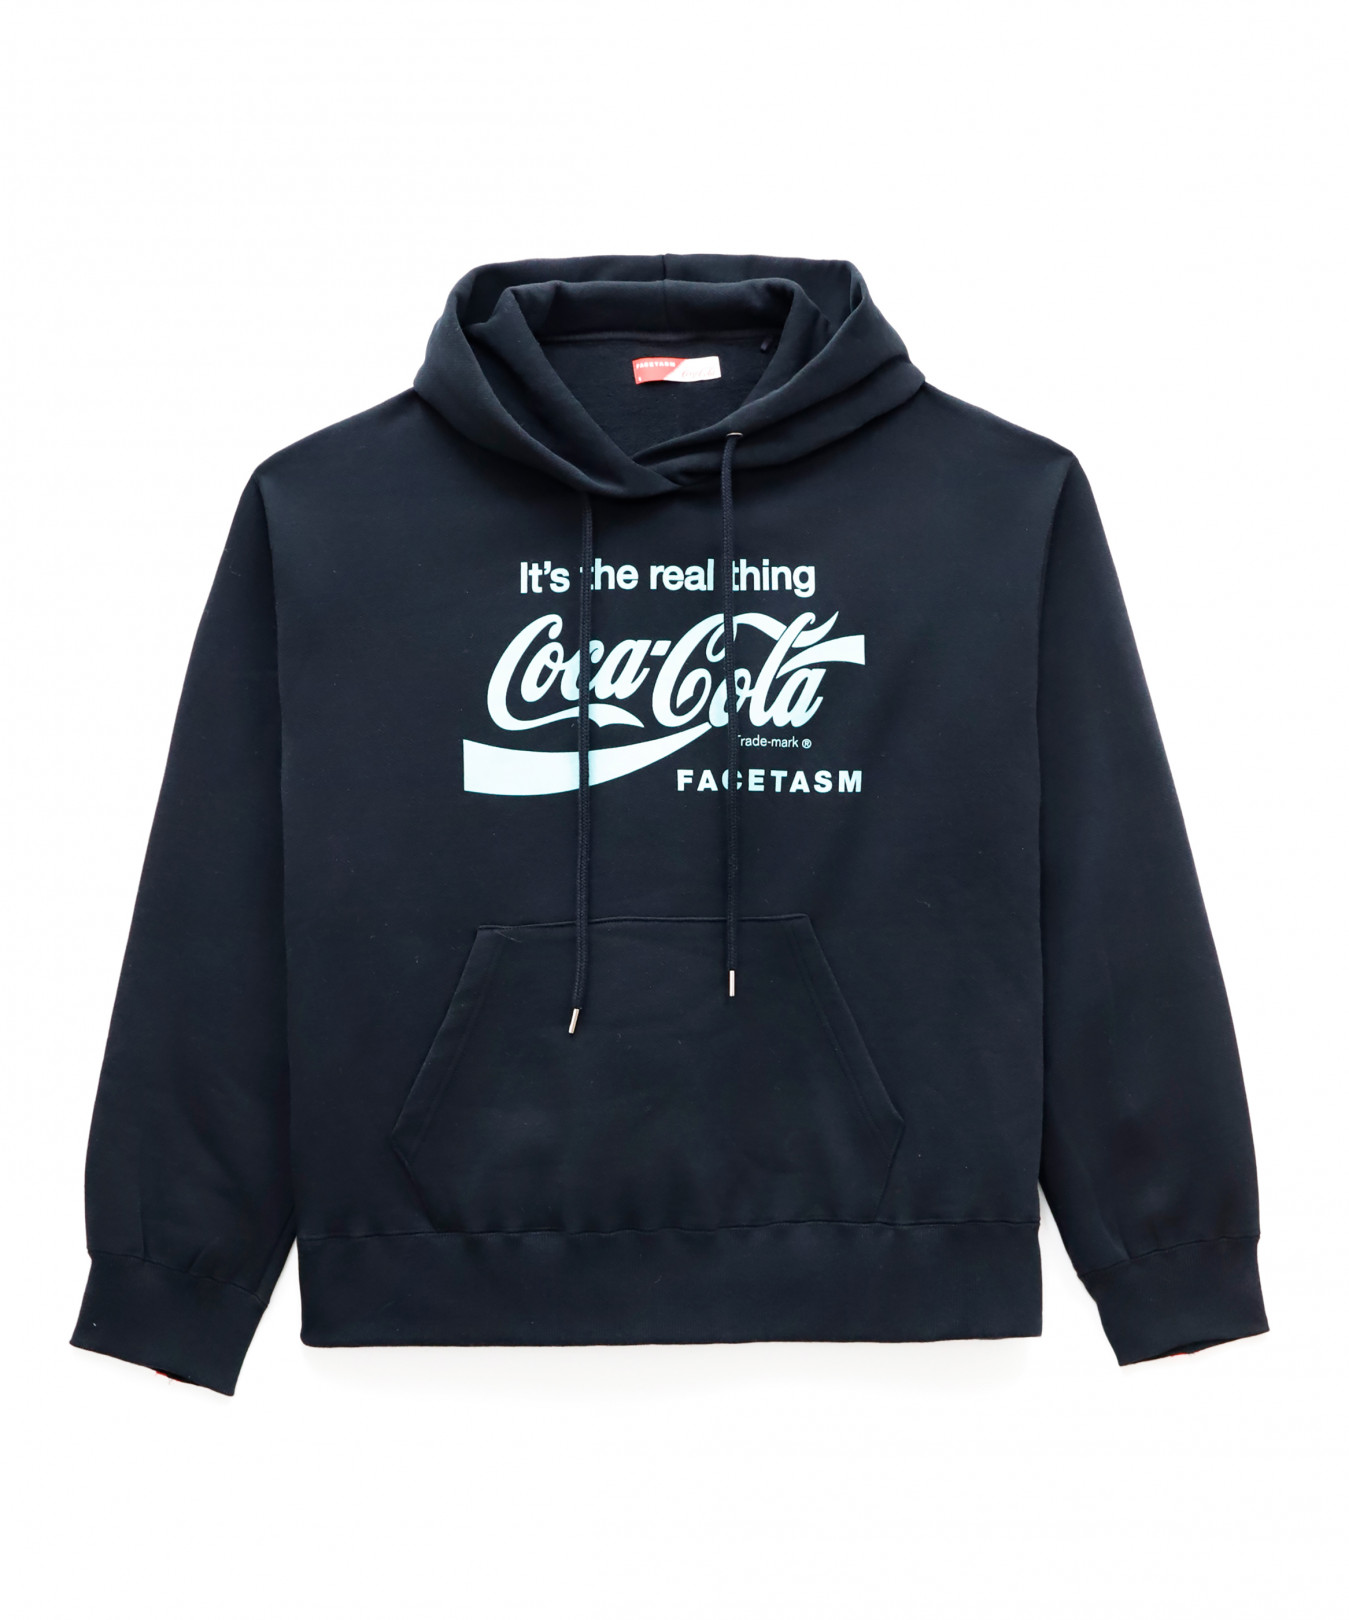 「ファセッタズム × コカ・コーラ（FACETASM × Coca-Cola）」カプセルコレクション